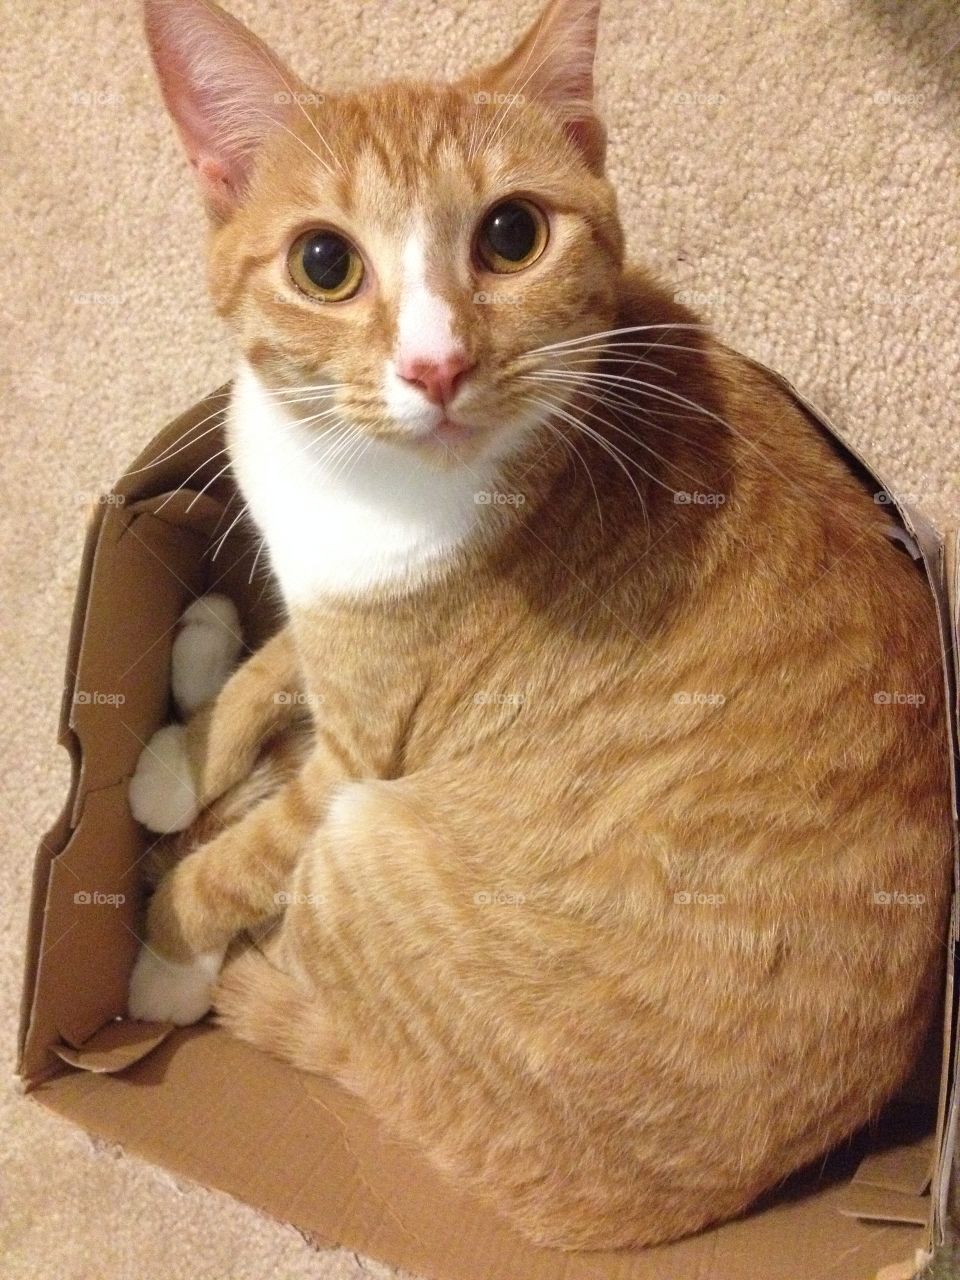 Cat. Cat in box